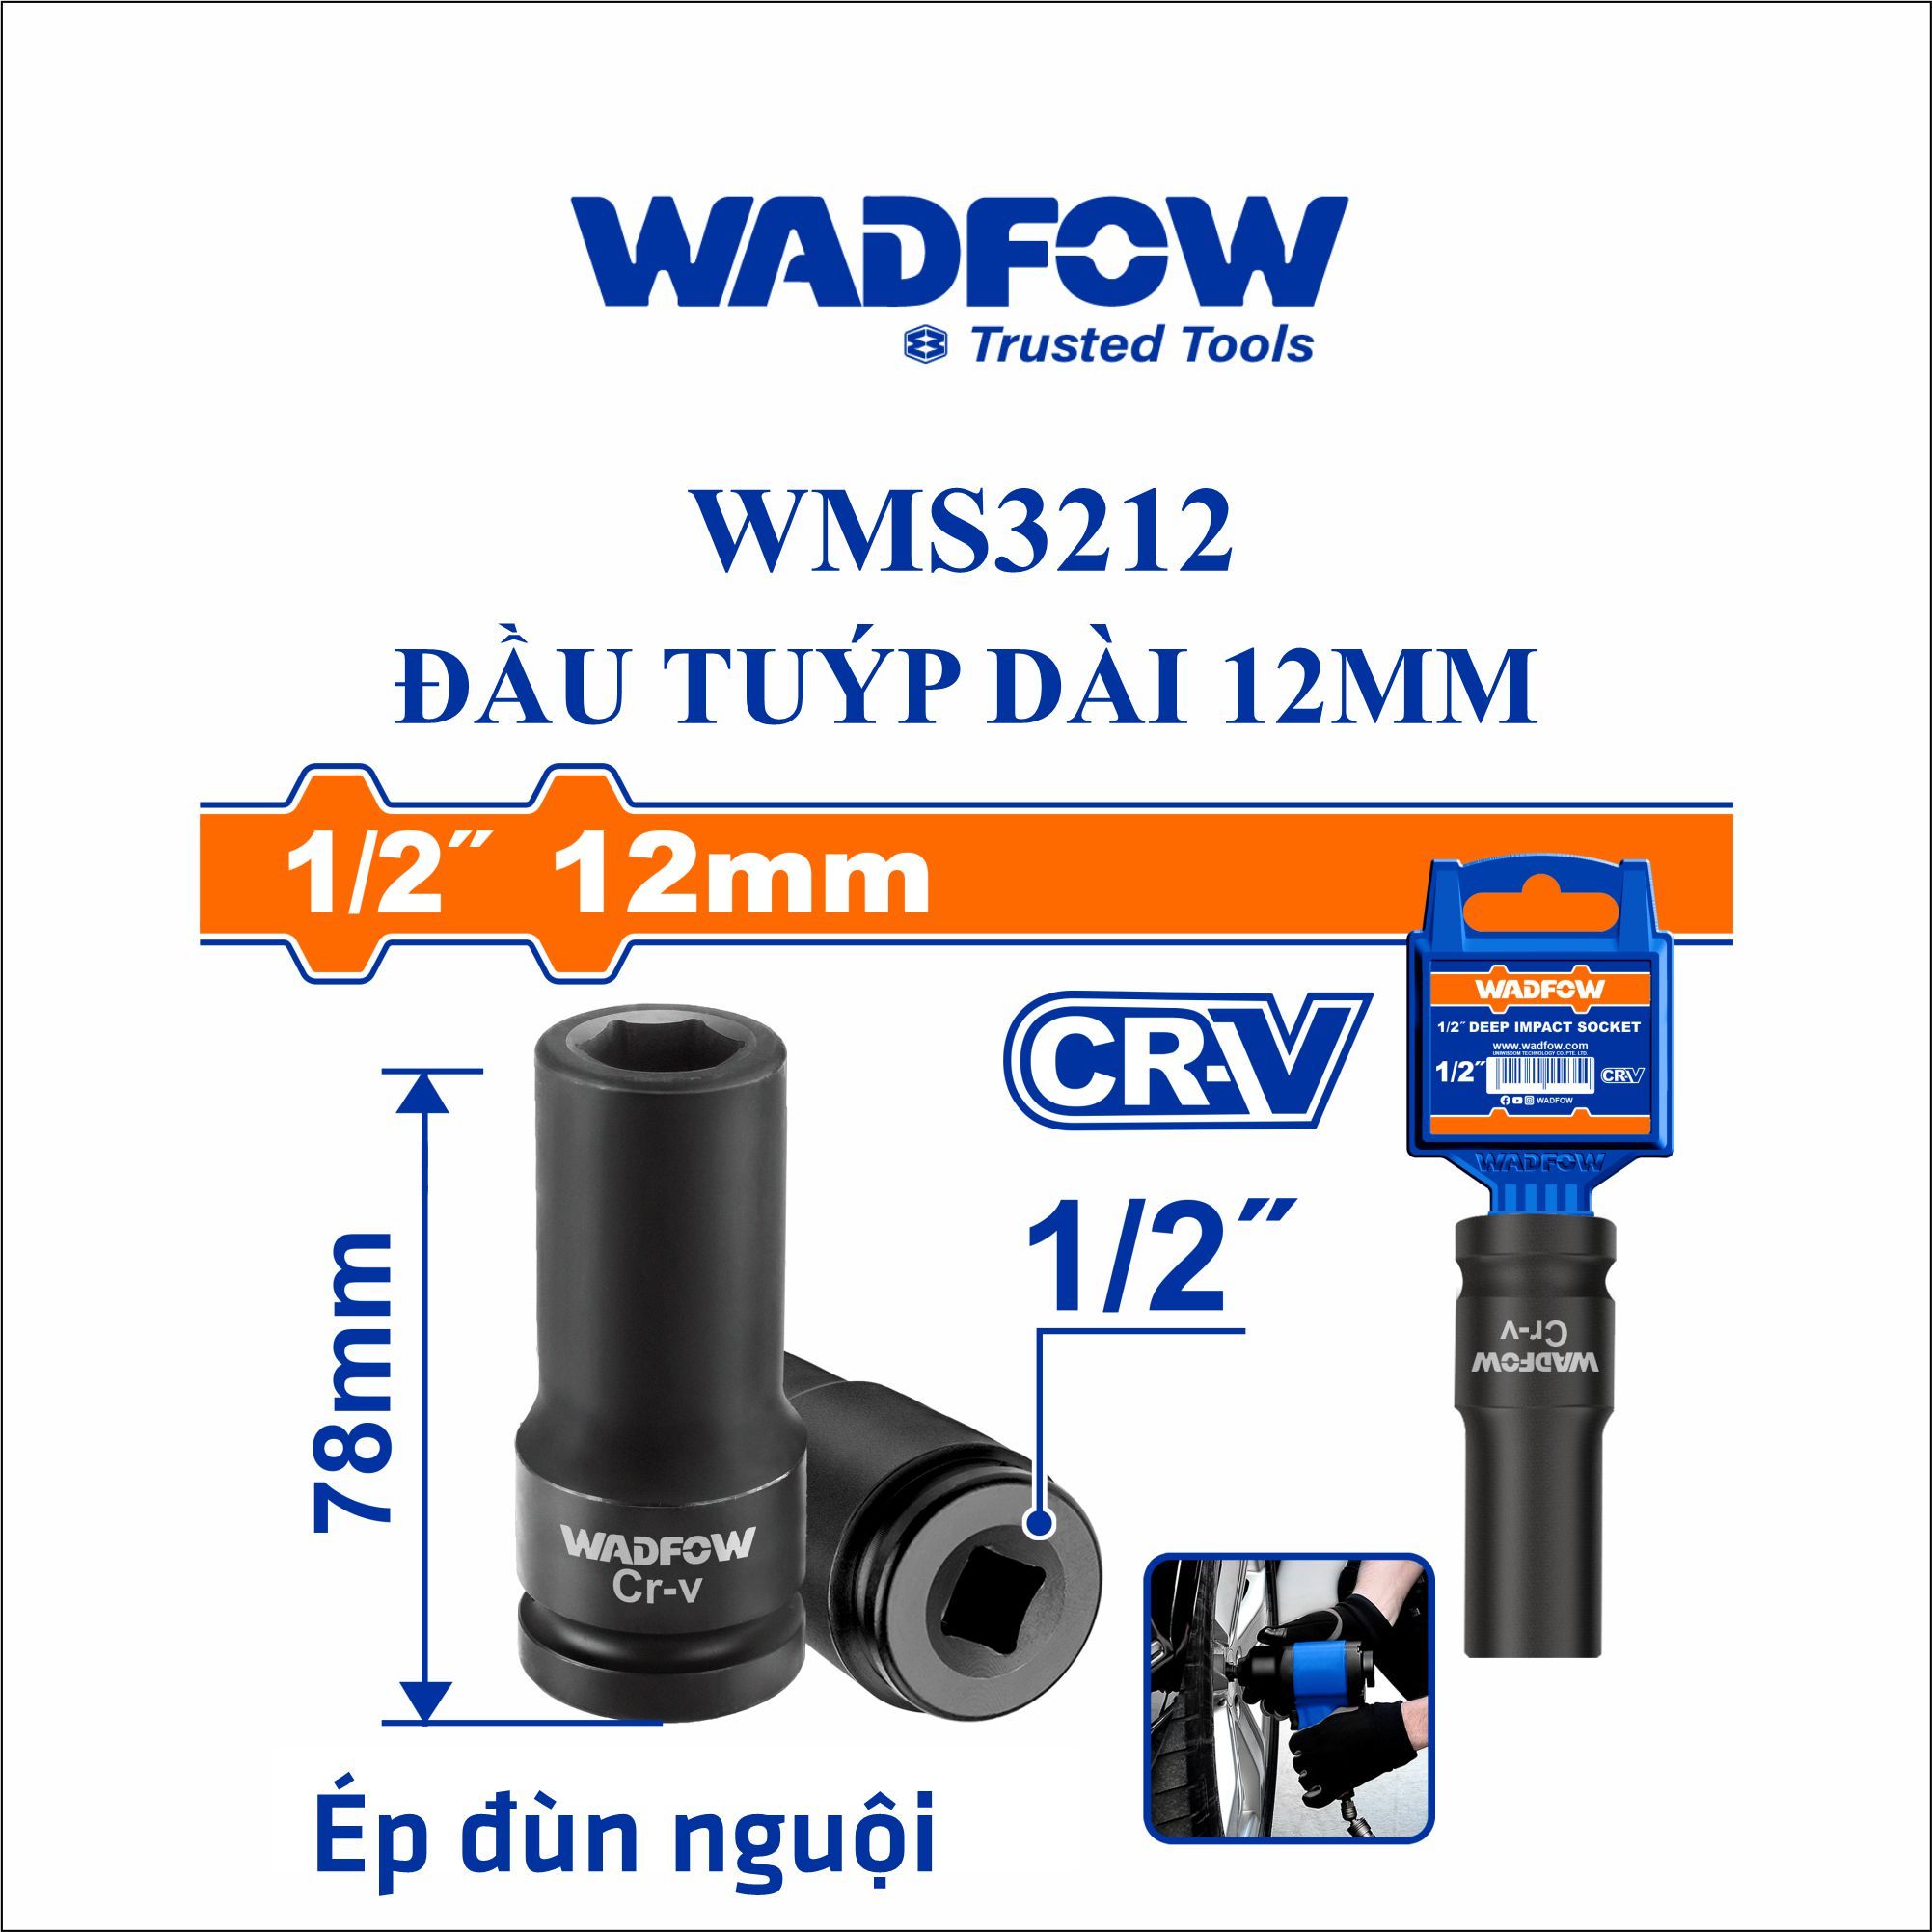  Đầu tuýp dài 12mm WADFOW WMS3212 